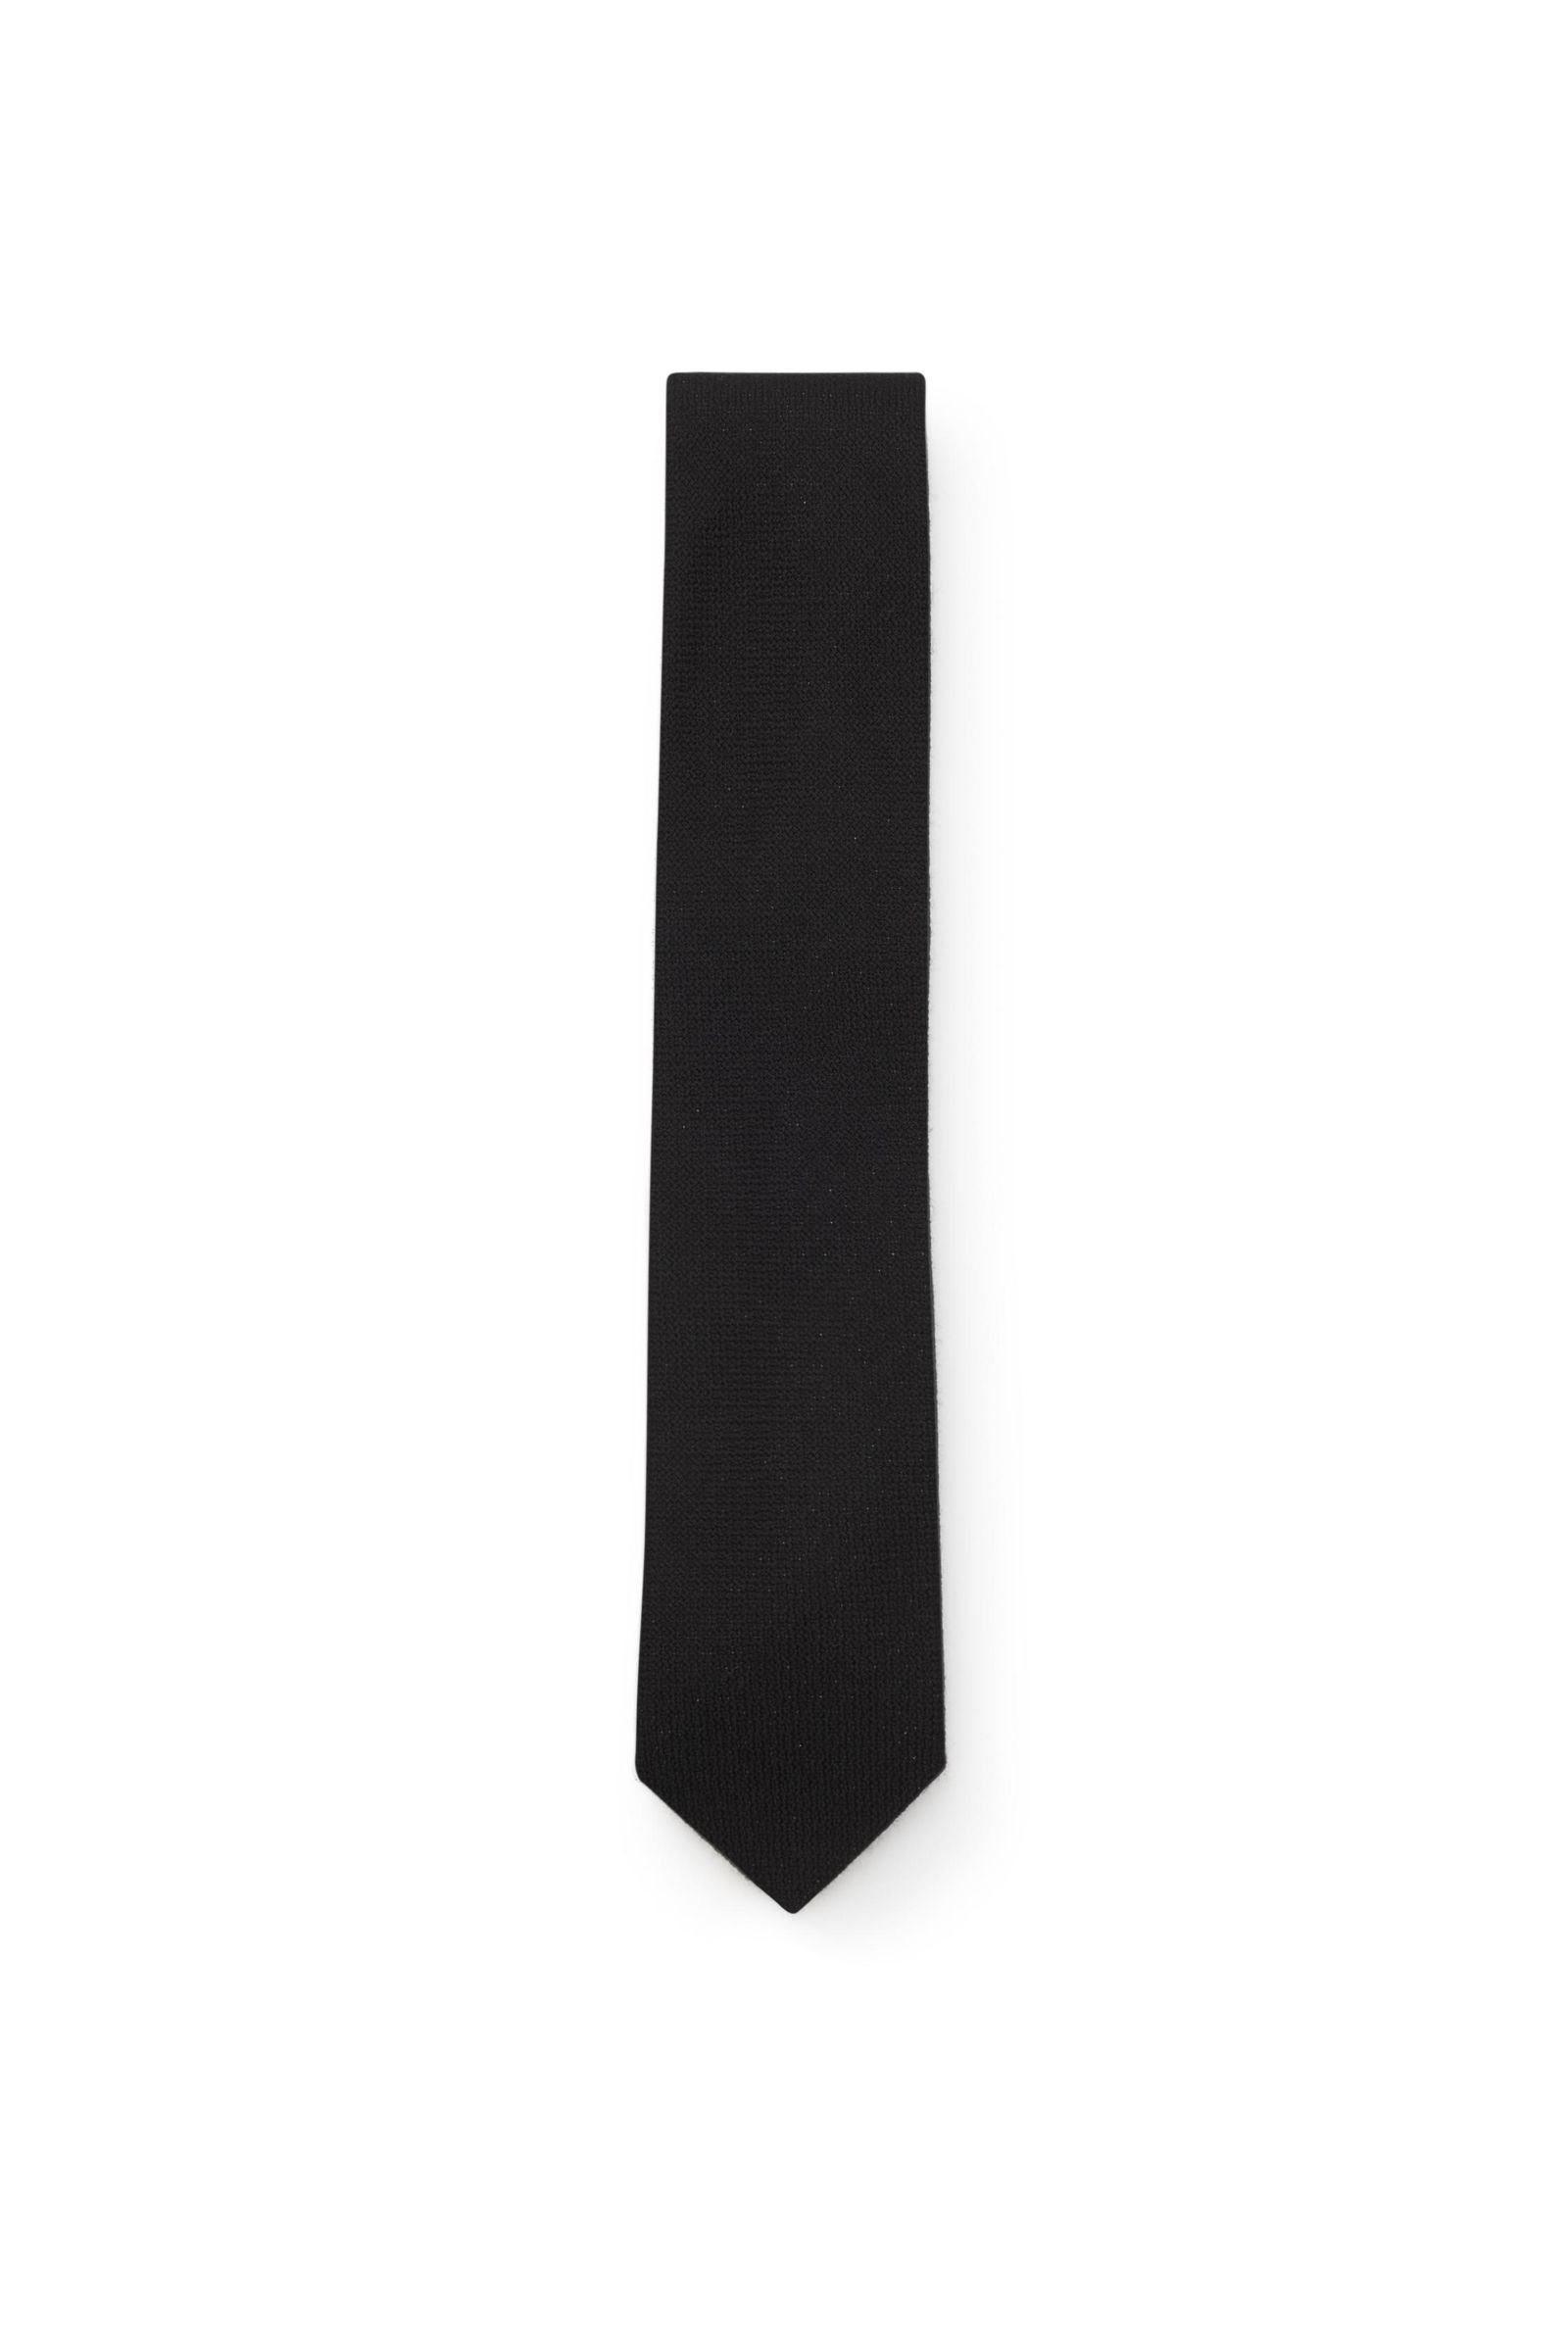 Cashmere Krawatte schwarz